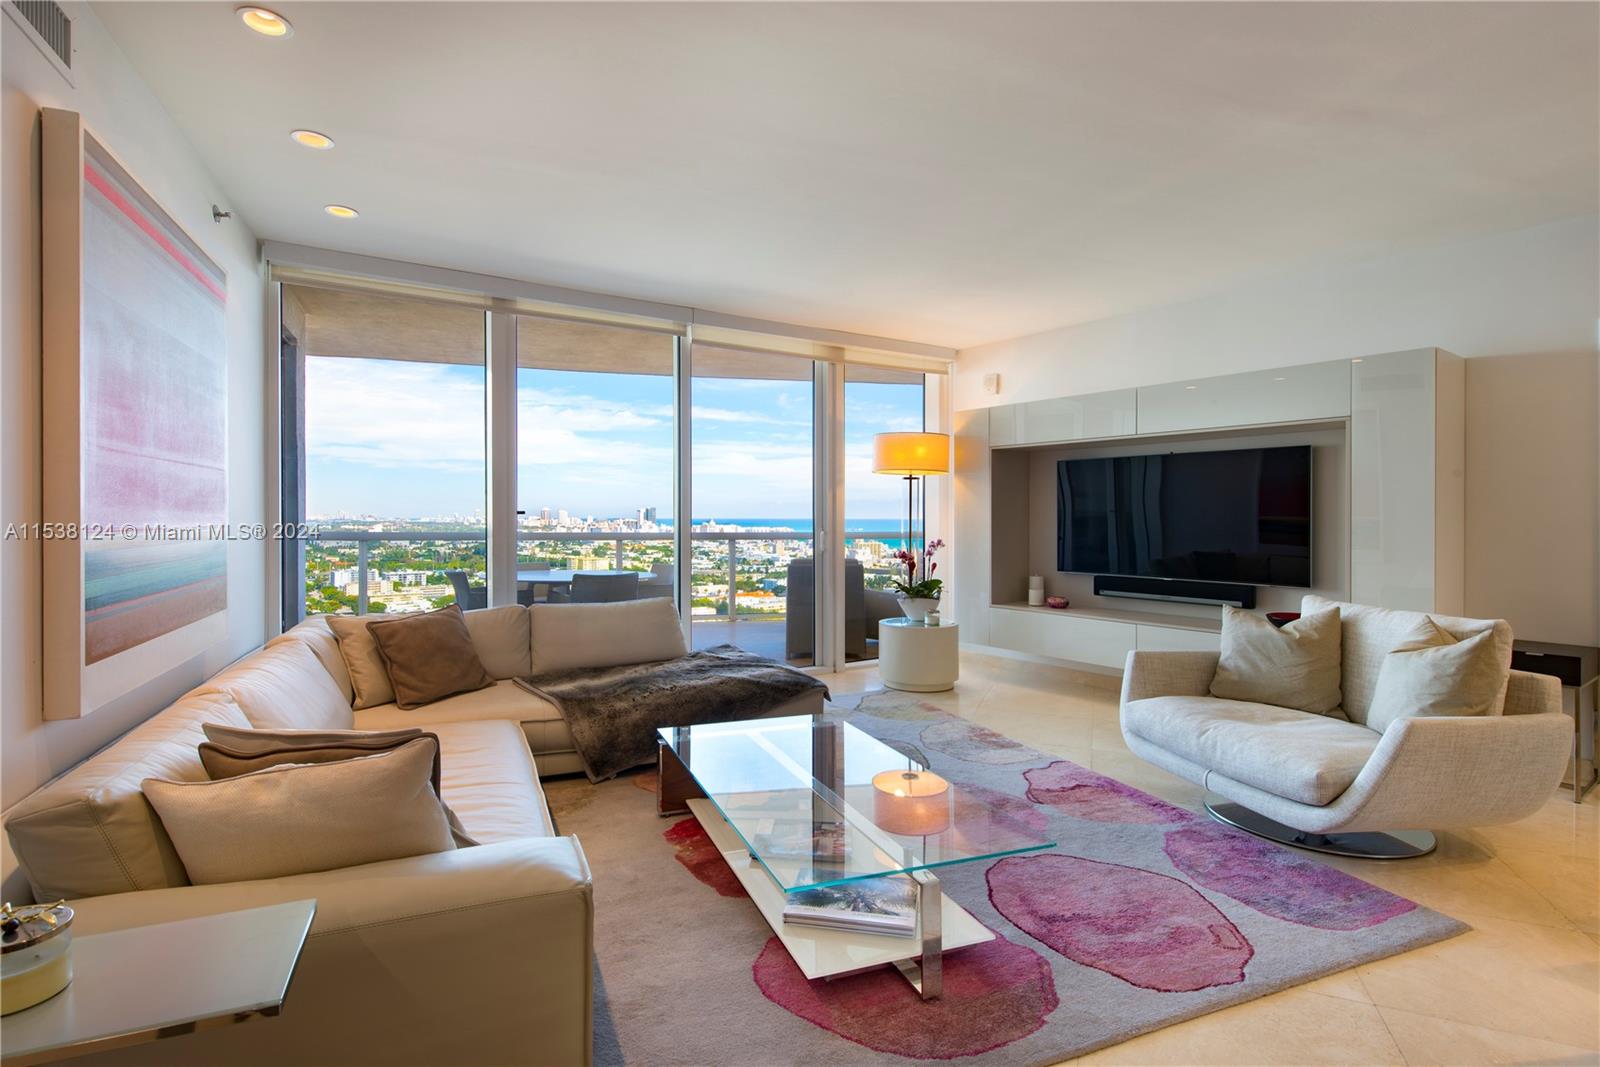 Rental Property at 400 Alton Rd Rd Ph07, Miami Beach, Miami-Dade County, Florida - Bedrooms: 2 
Bathrooms: 2  - $8,500 MO.